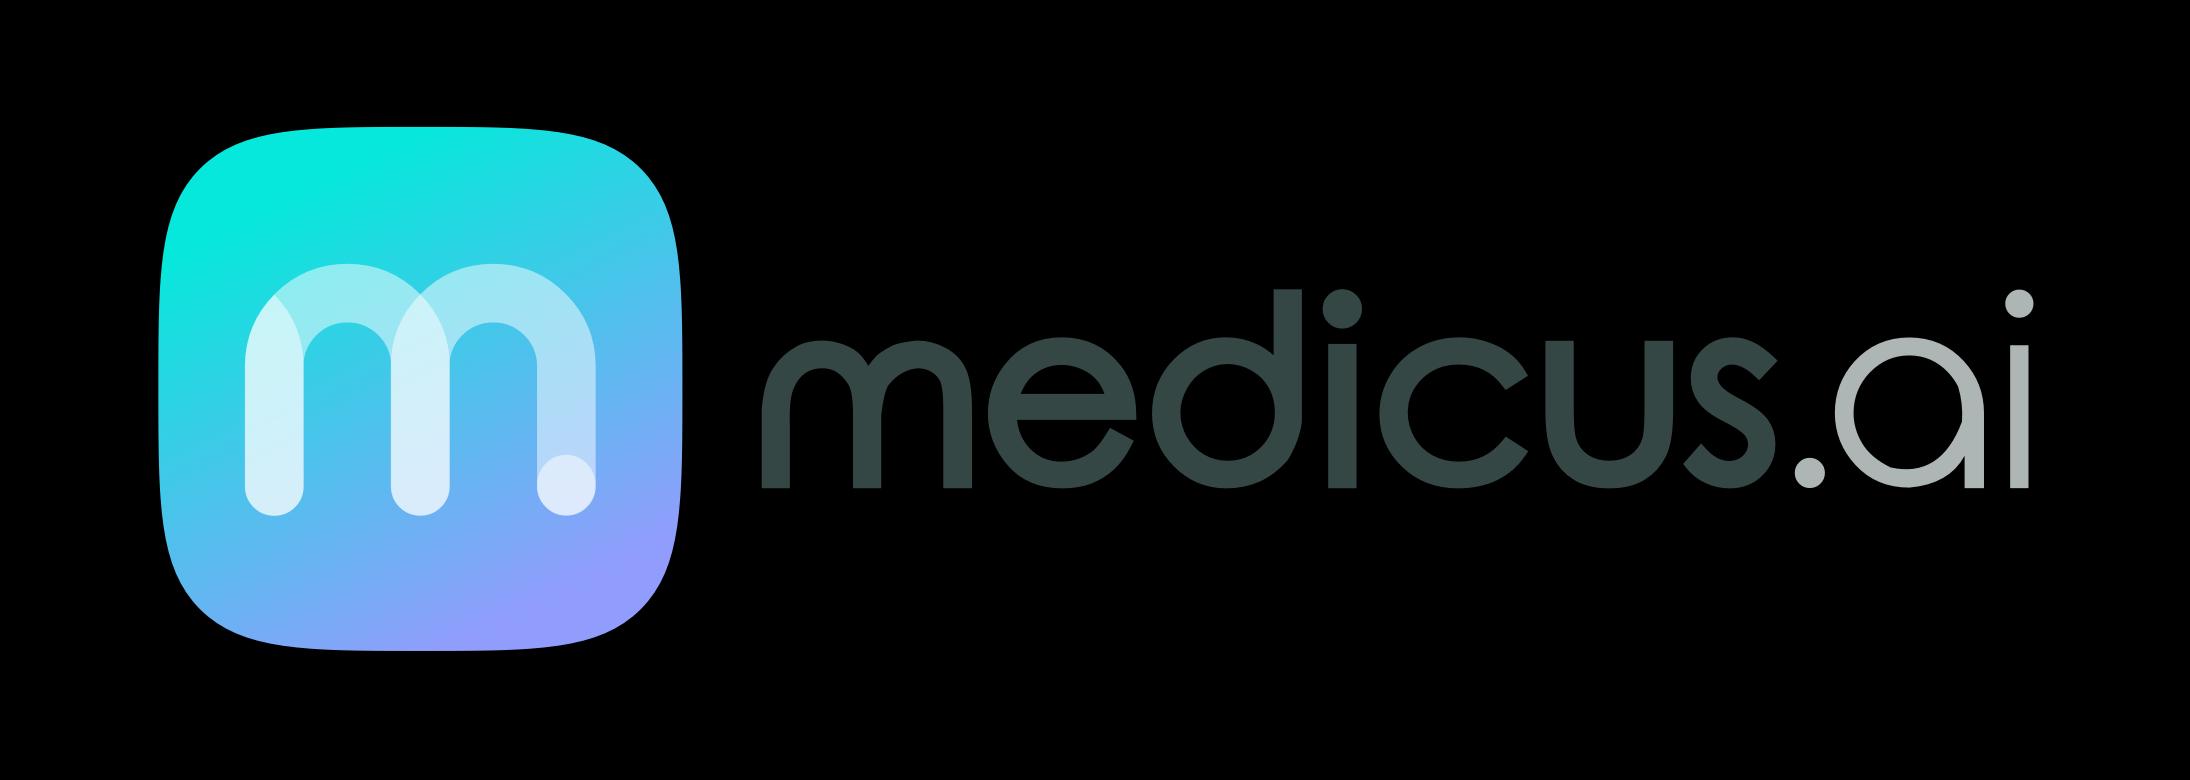 Medicus AI_logo